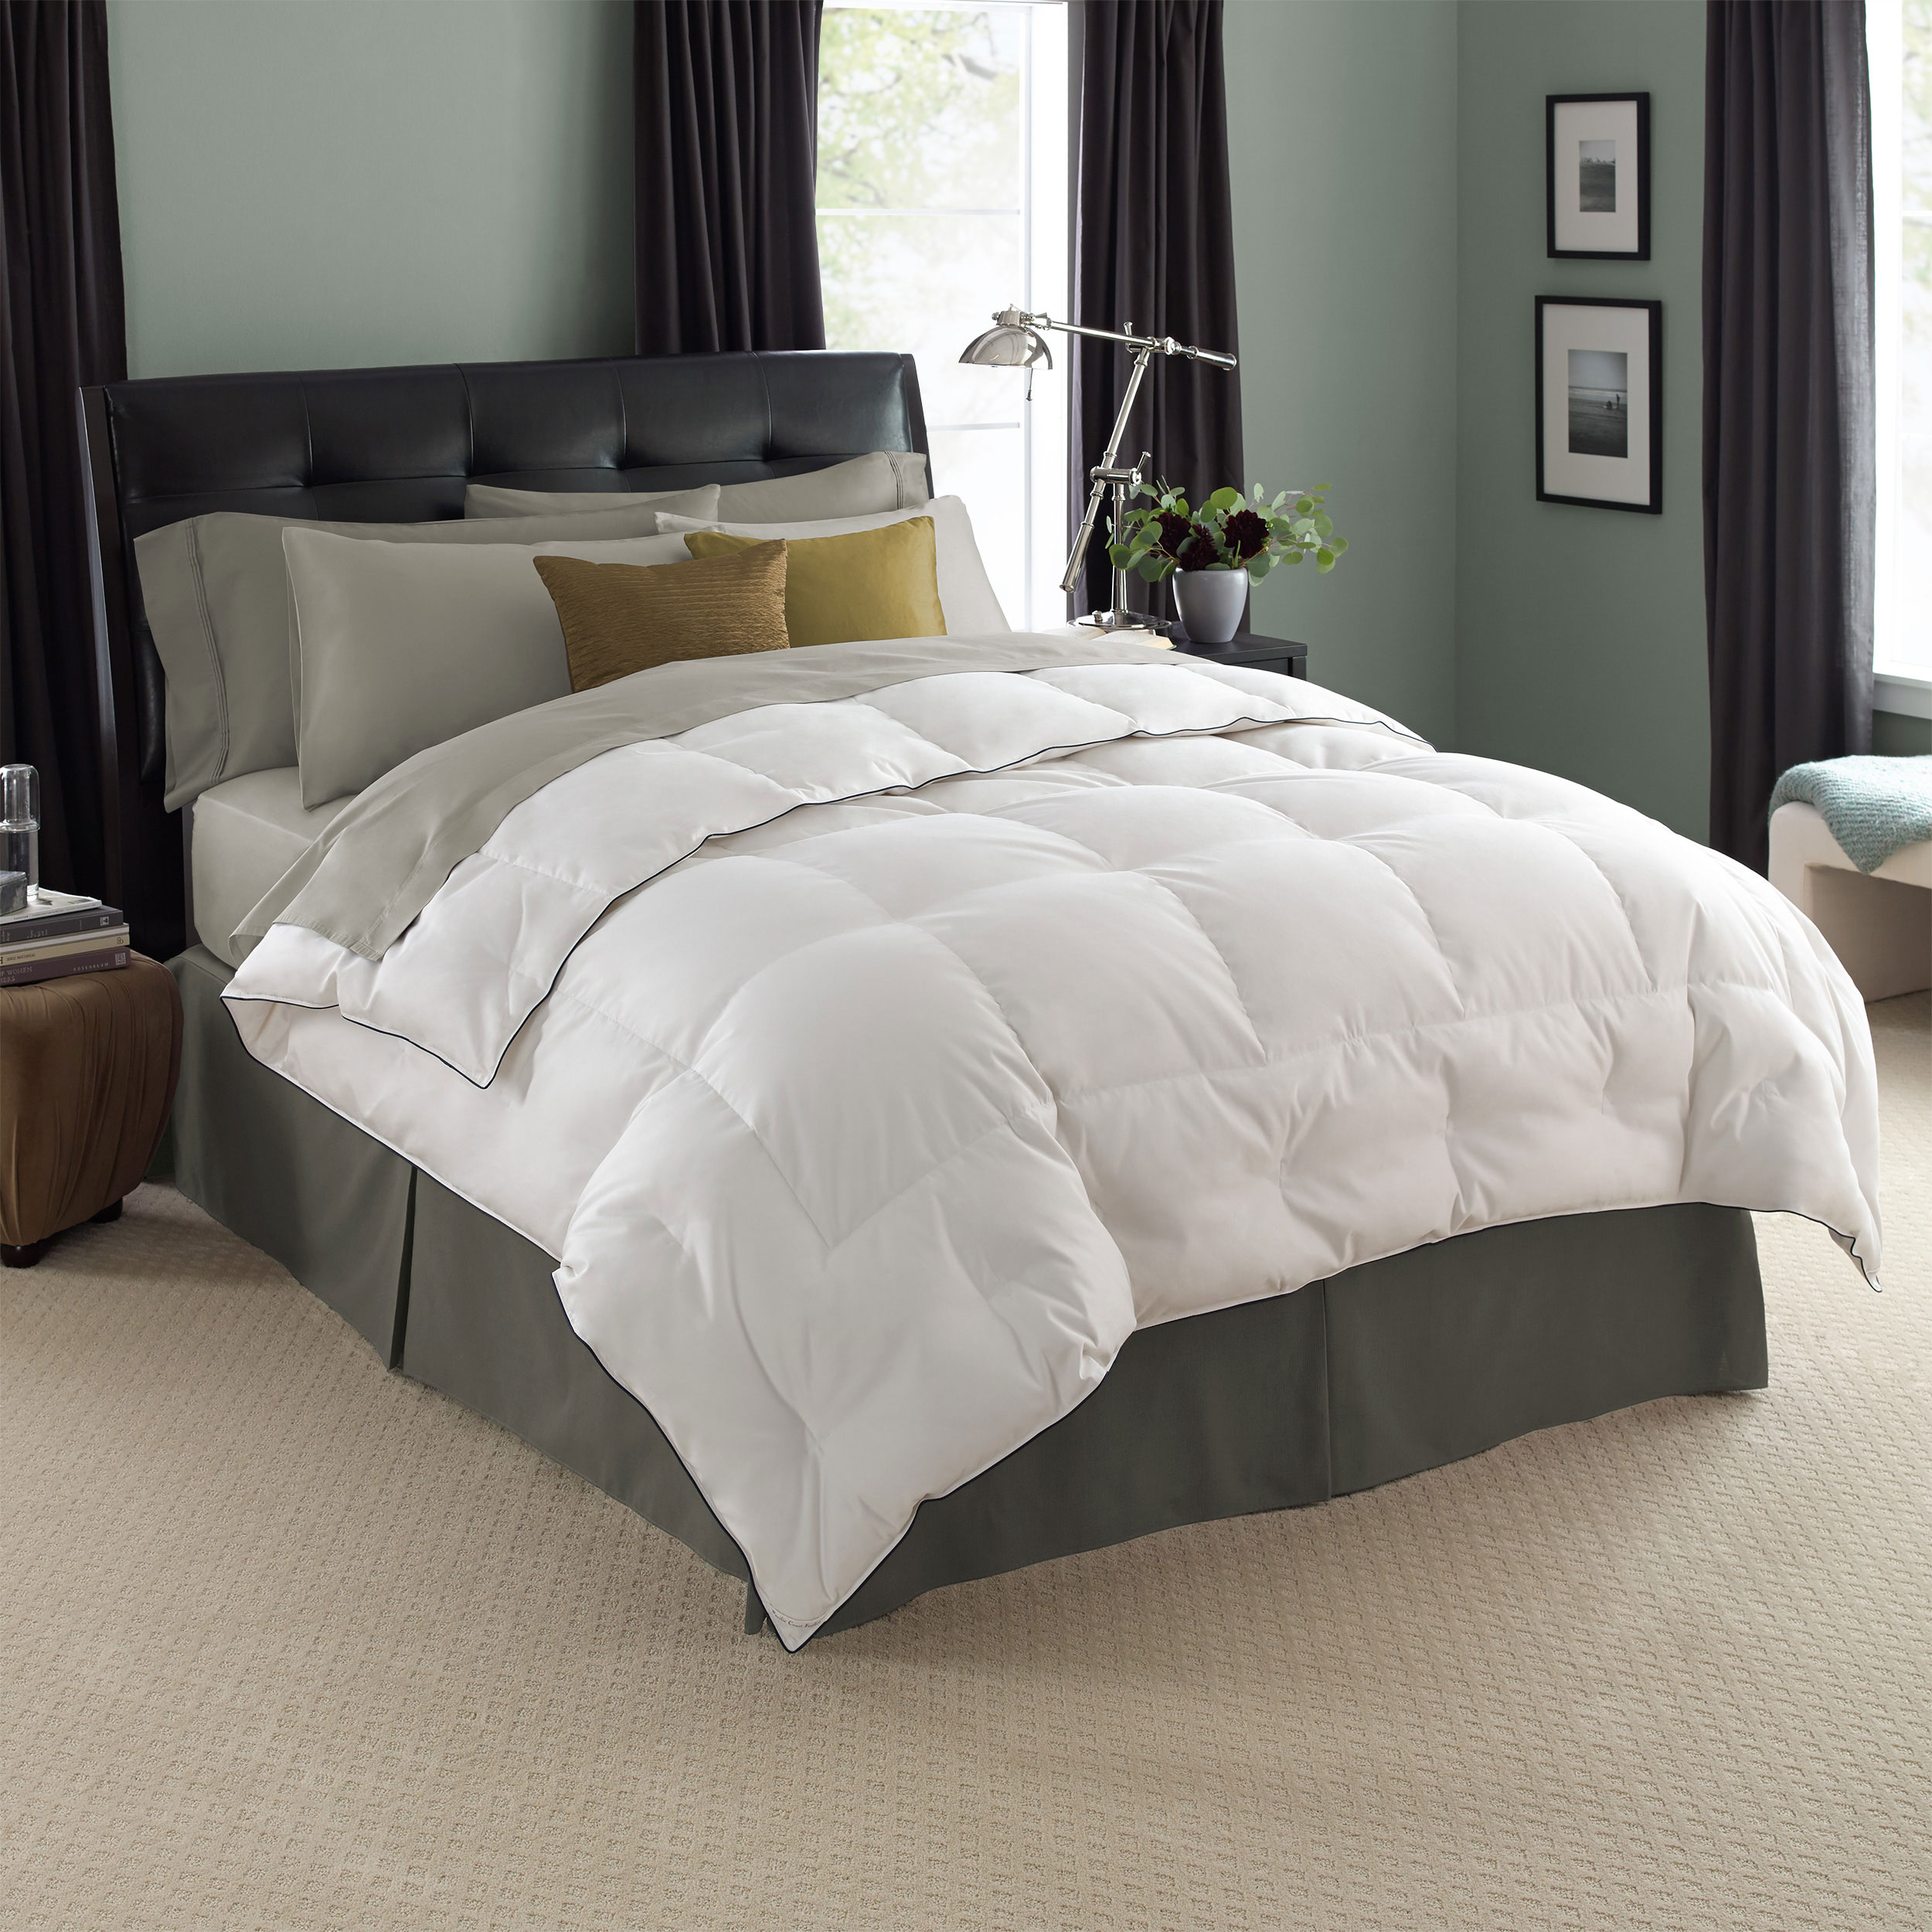 Deluxe Comforter Pacific Coast Bedding